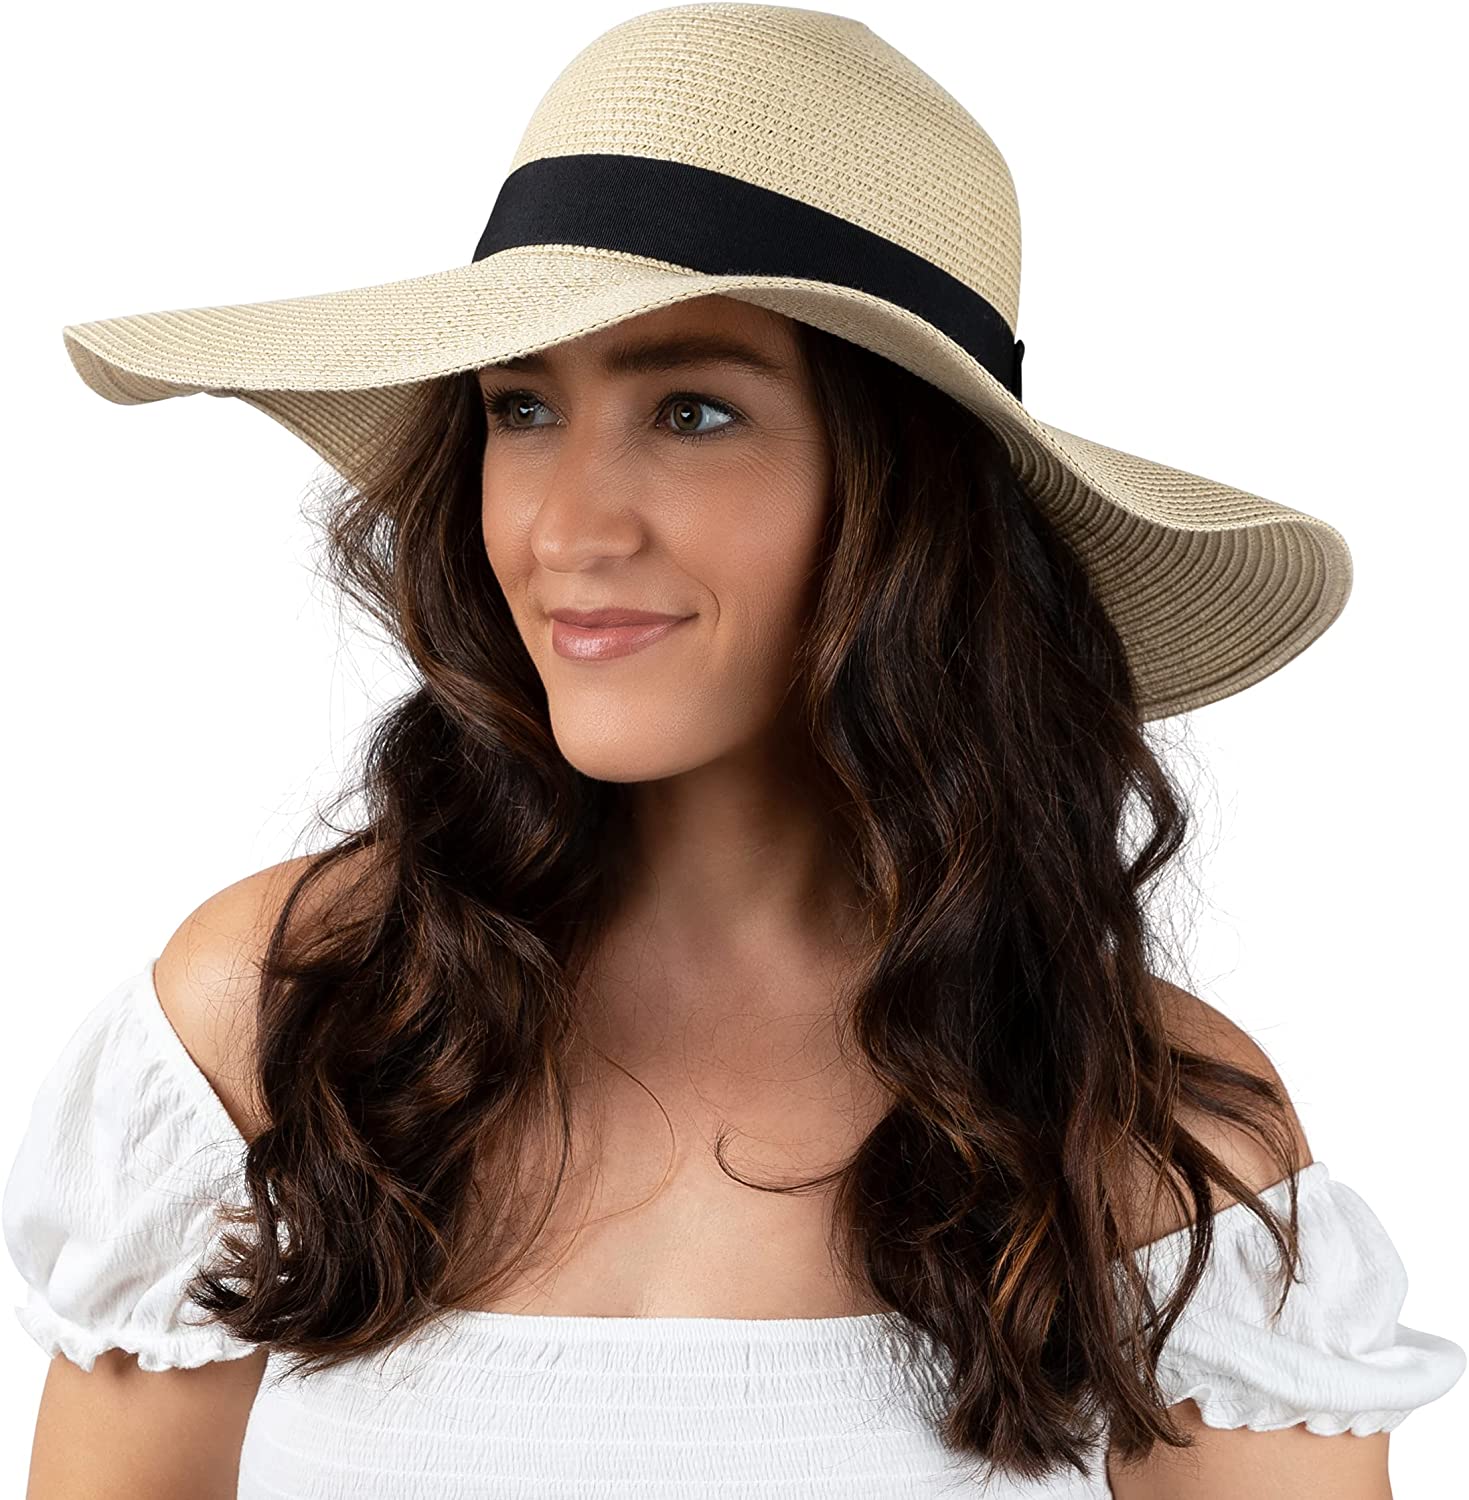 Hisir Club Women Floppy Sun Hat with Wide Brim—Foldable Roll-Up Straw Beach Hat UPF 50